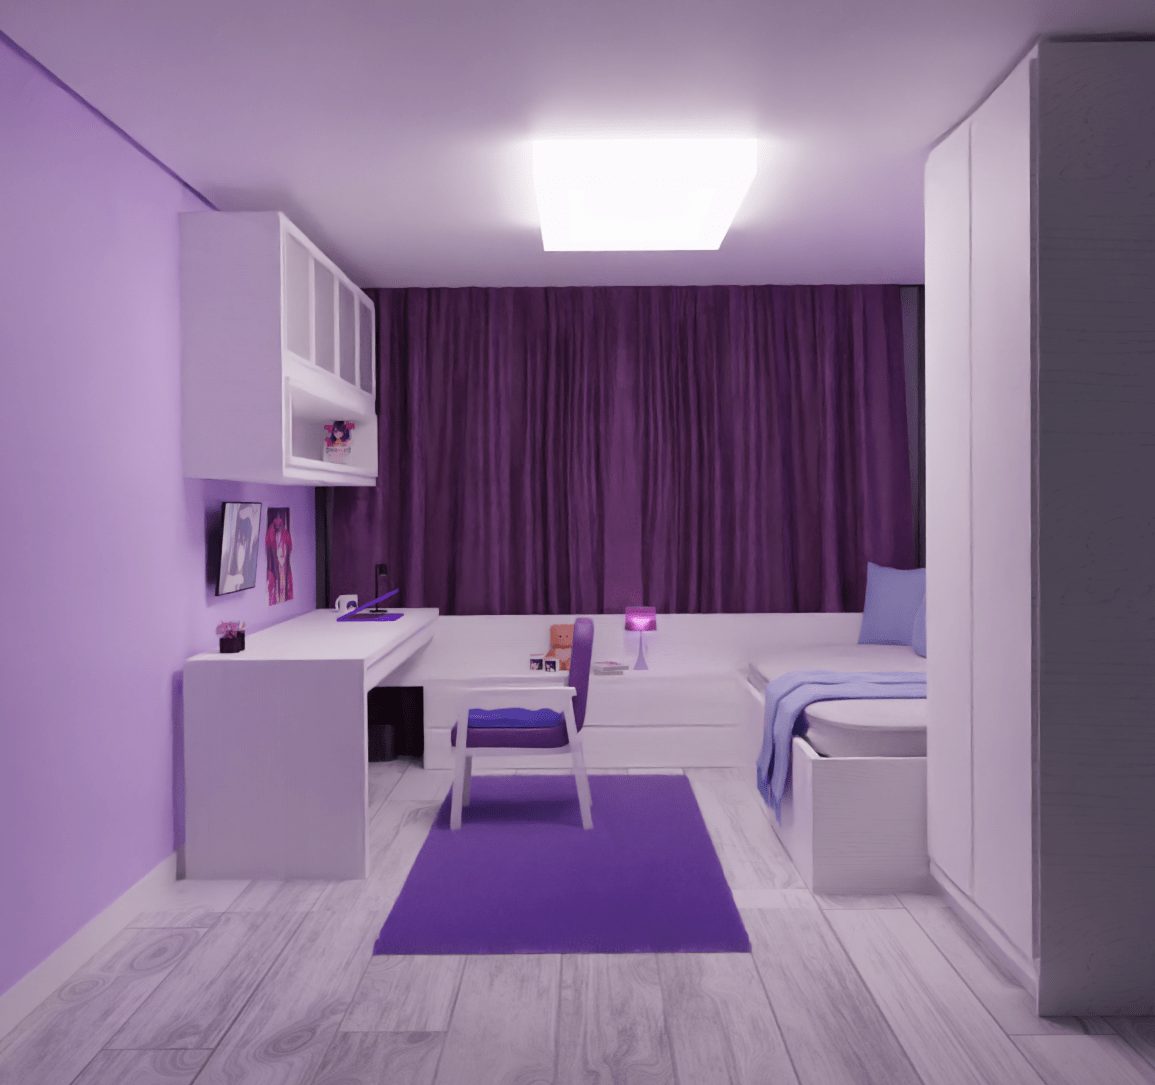 Phòng ngủ màu tím pastel mang phong cách đơn giản